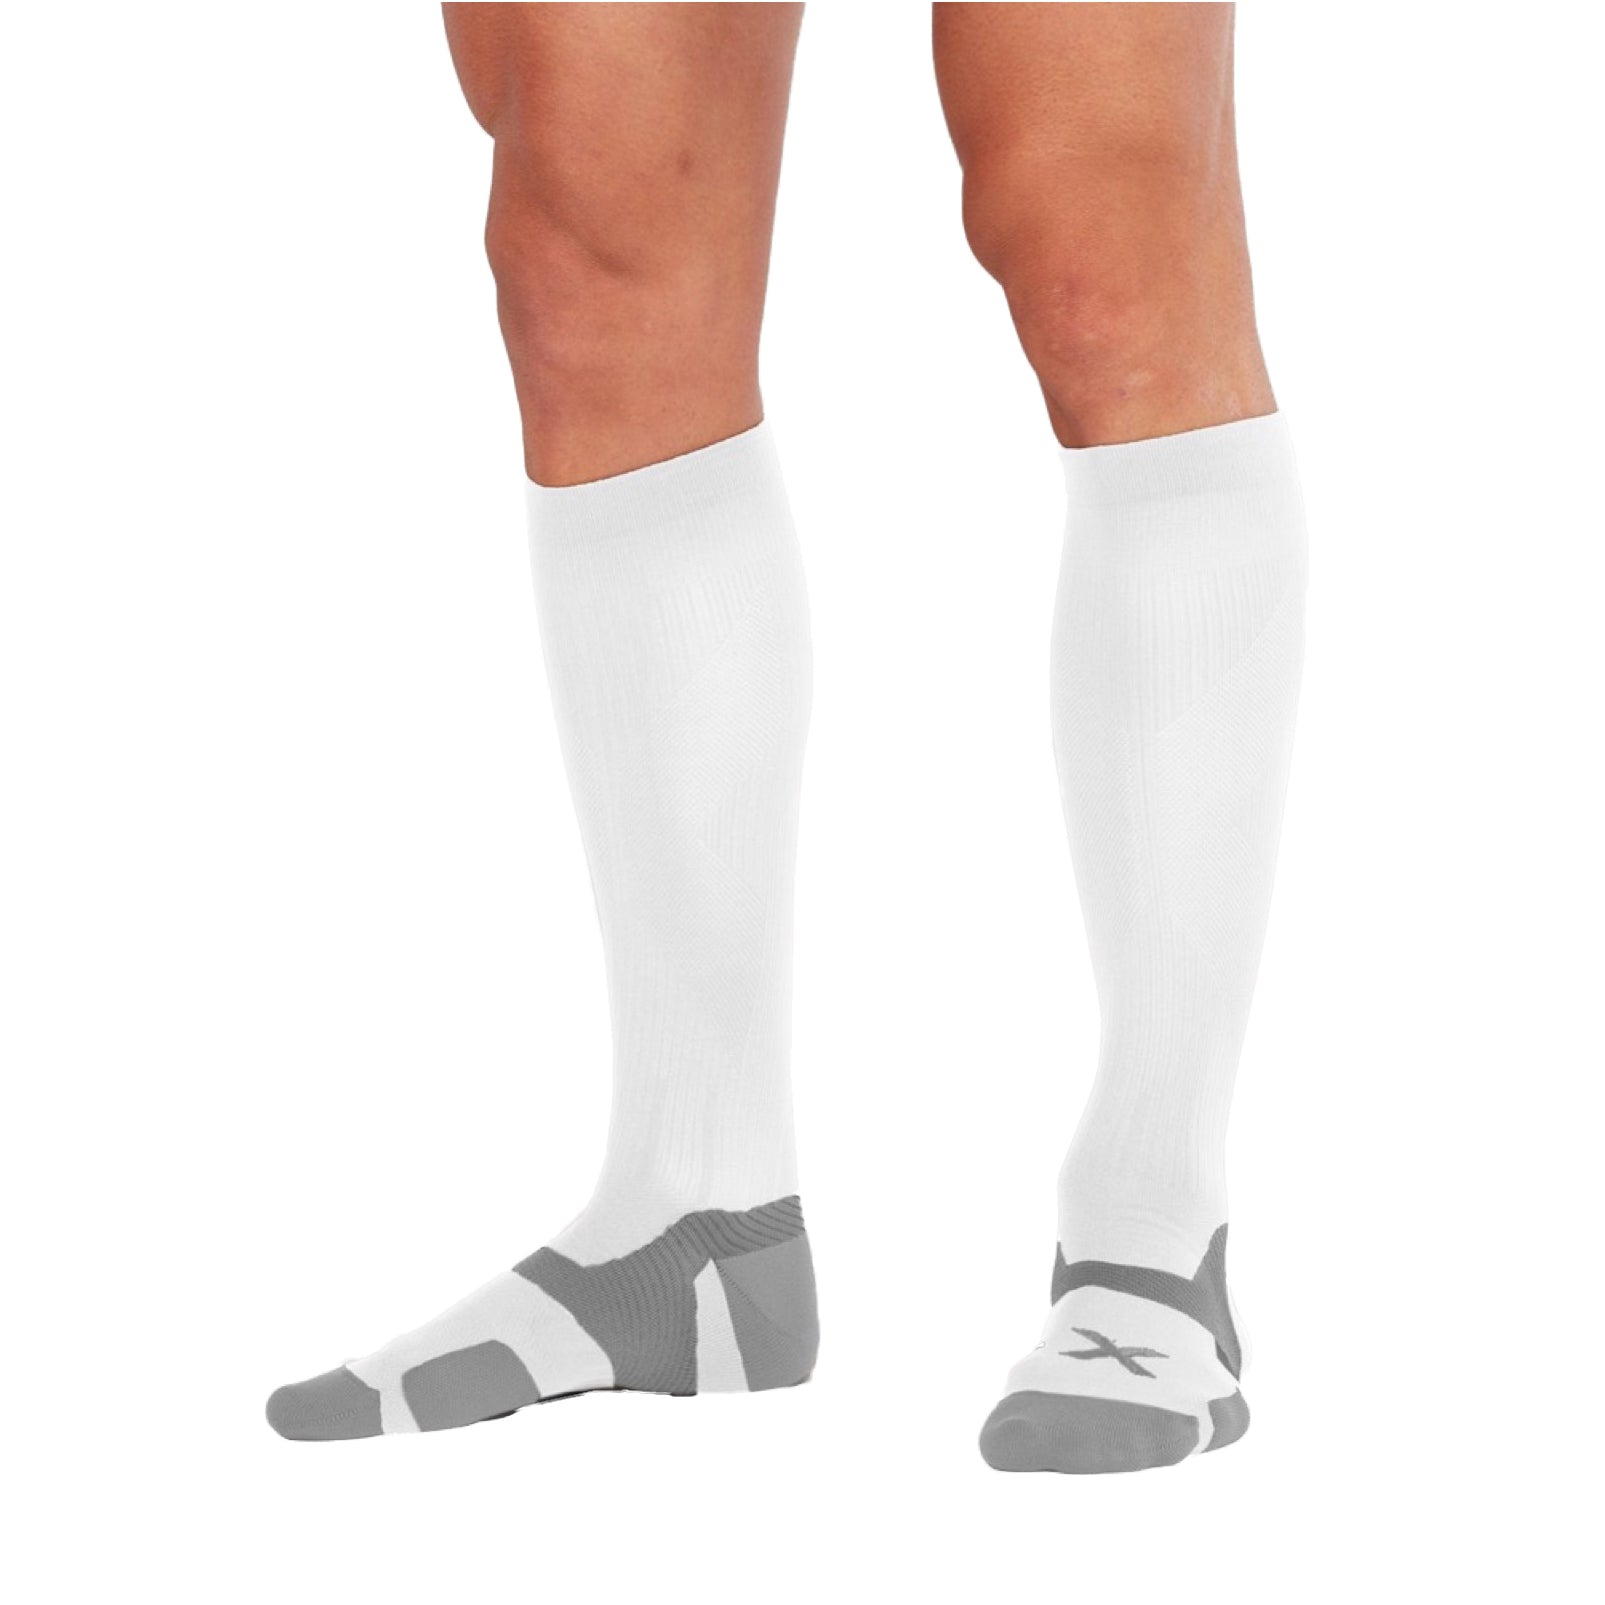 Sportsocken VECTR Cushion Full Length Socks